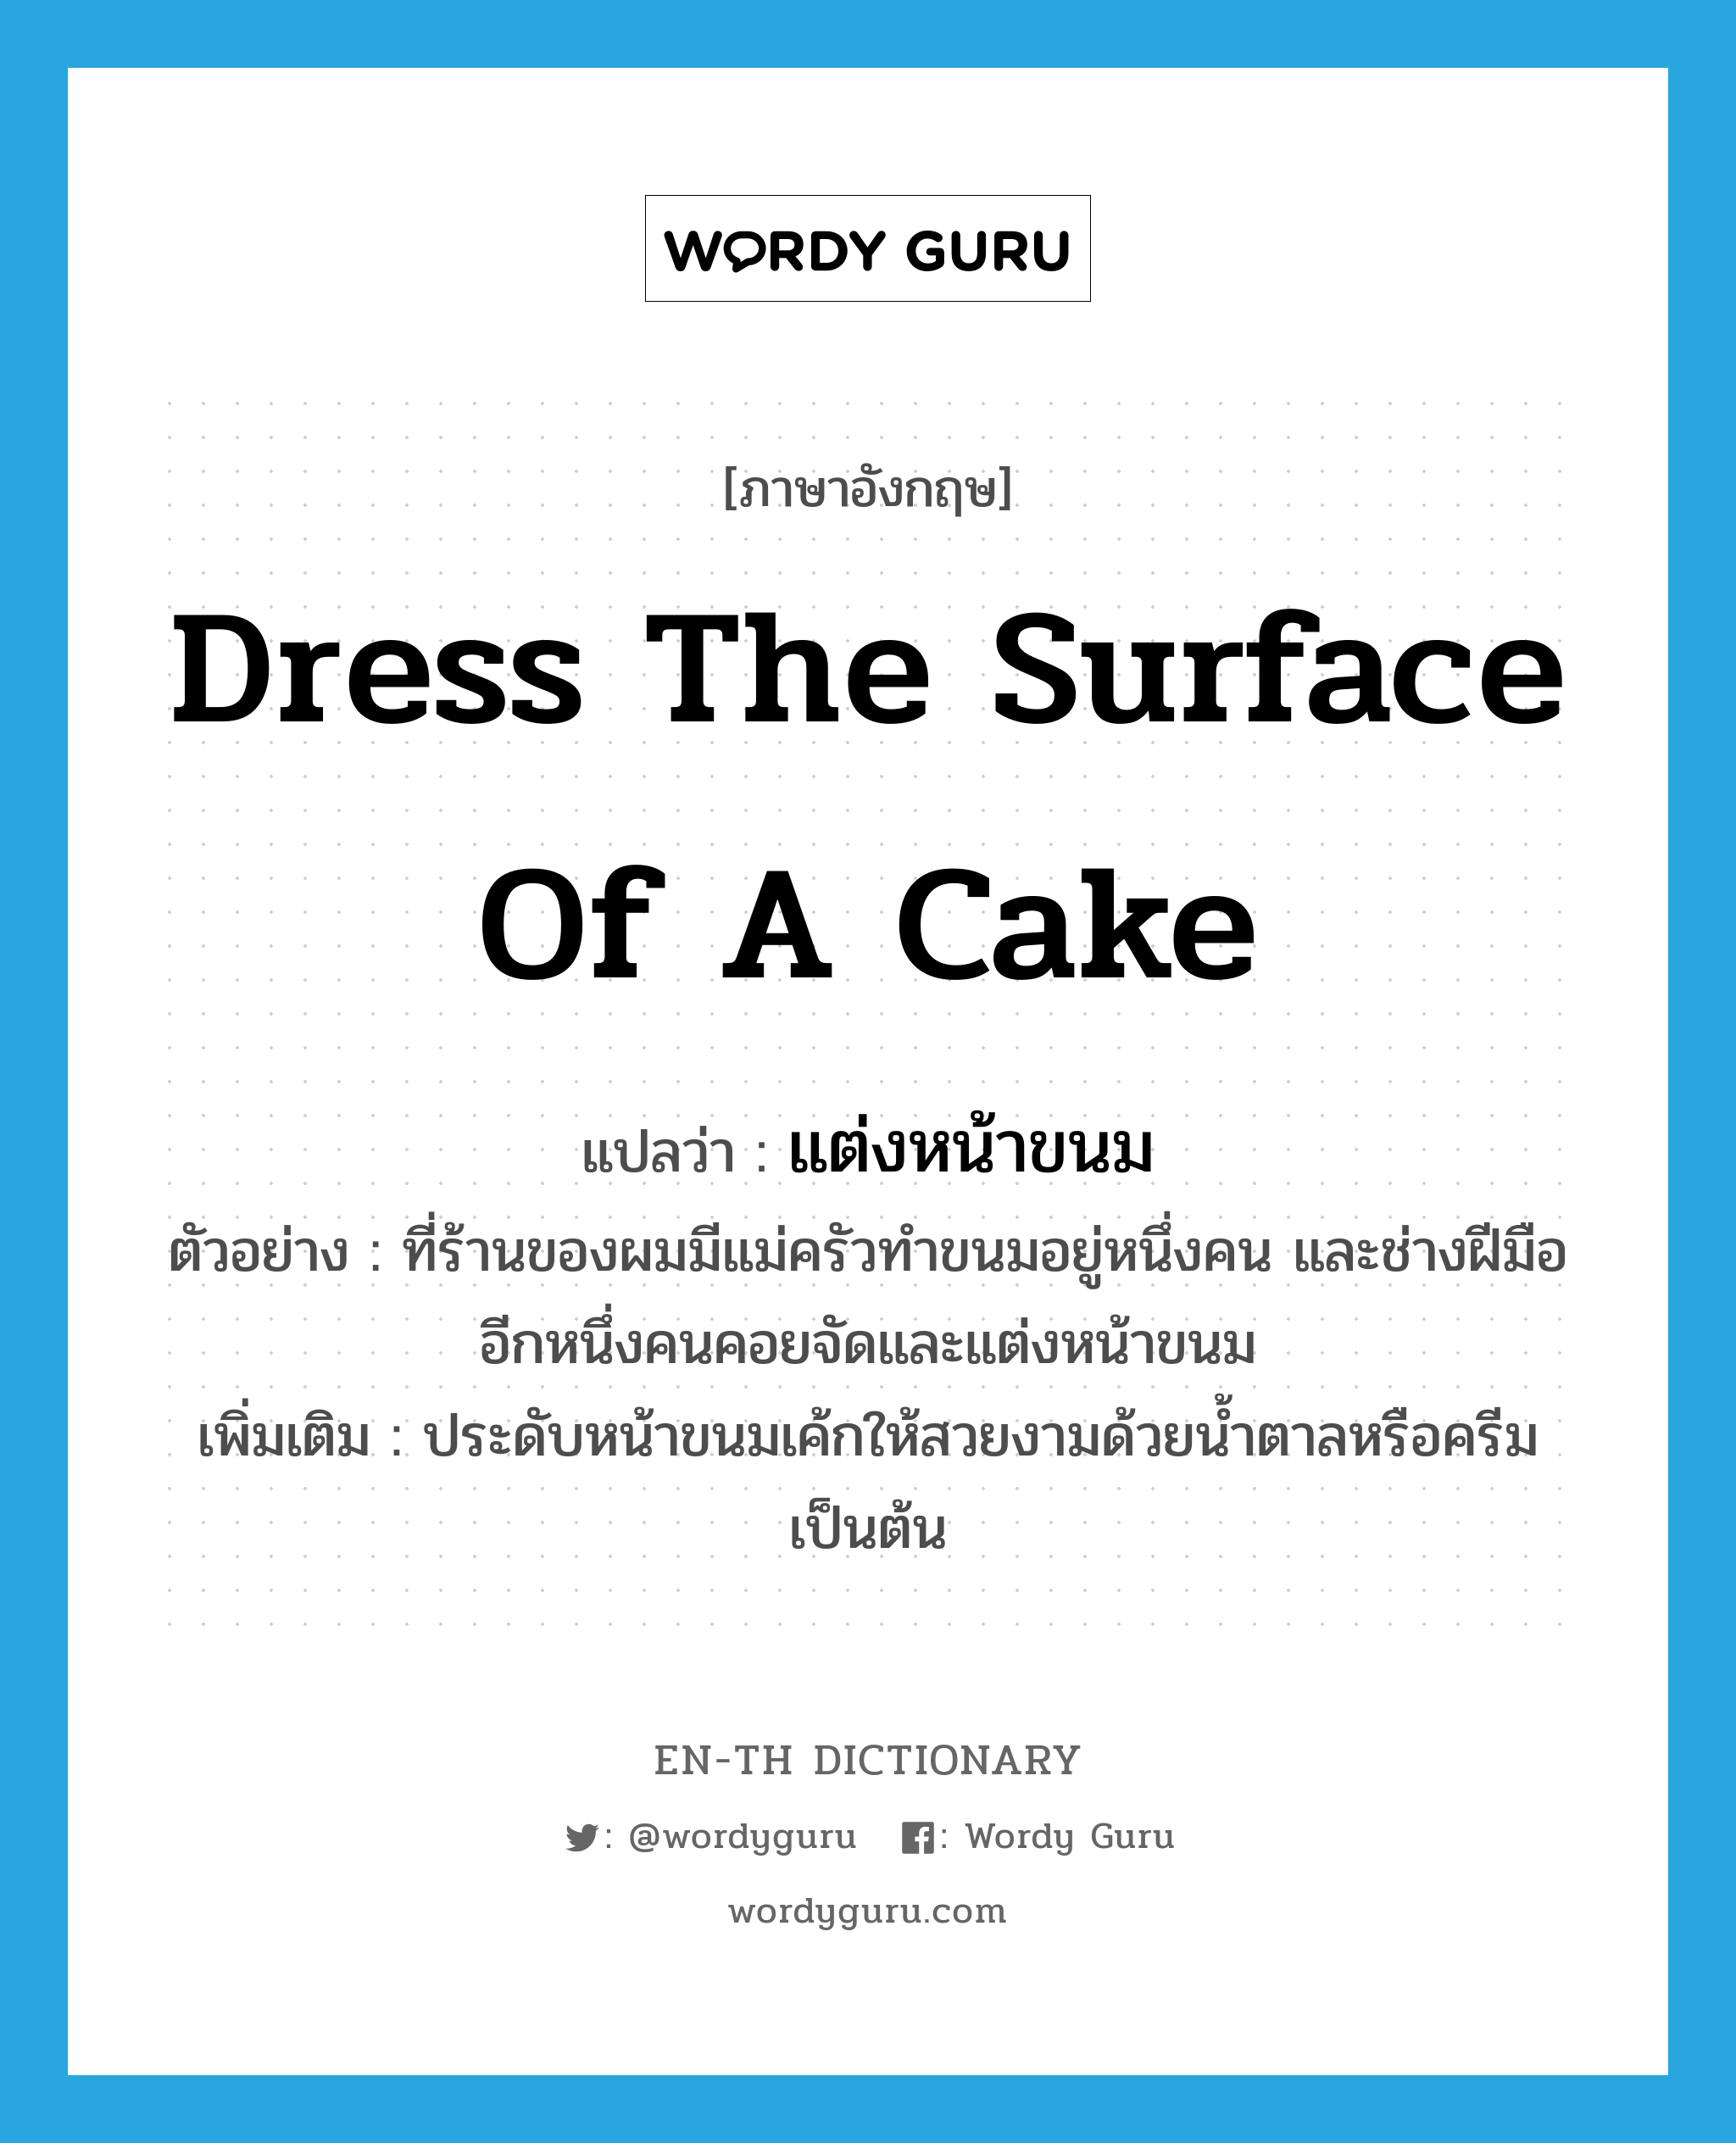 dress the surface of a cake แปลว่า?, คำศัพท์ภาษาอังกฤษ dress the surface of a cake แปลว่า แต่งหน้าขนม ประเภท V ตัวอย่าง ที่ร้านของผมมีแม่ครัวทำขนมอยู่หนึ่งคน และช่างฝีมืออีกหนึ่งคนคอยจัดและแต่งหน้าขนม เพิ่มเติม ประดับหน้าขนมเค้กให้สวยงามด้วยน้ำตาลหรือครีมเป็นต้น หมวด V